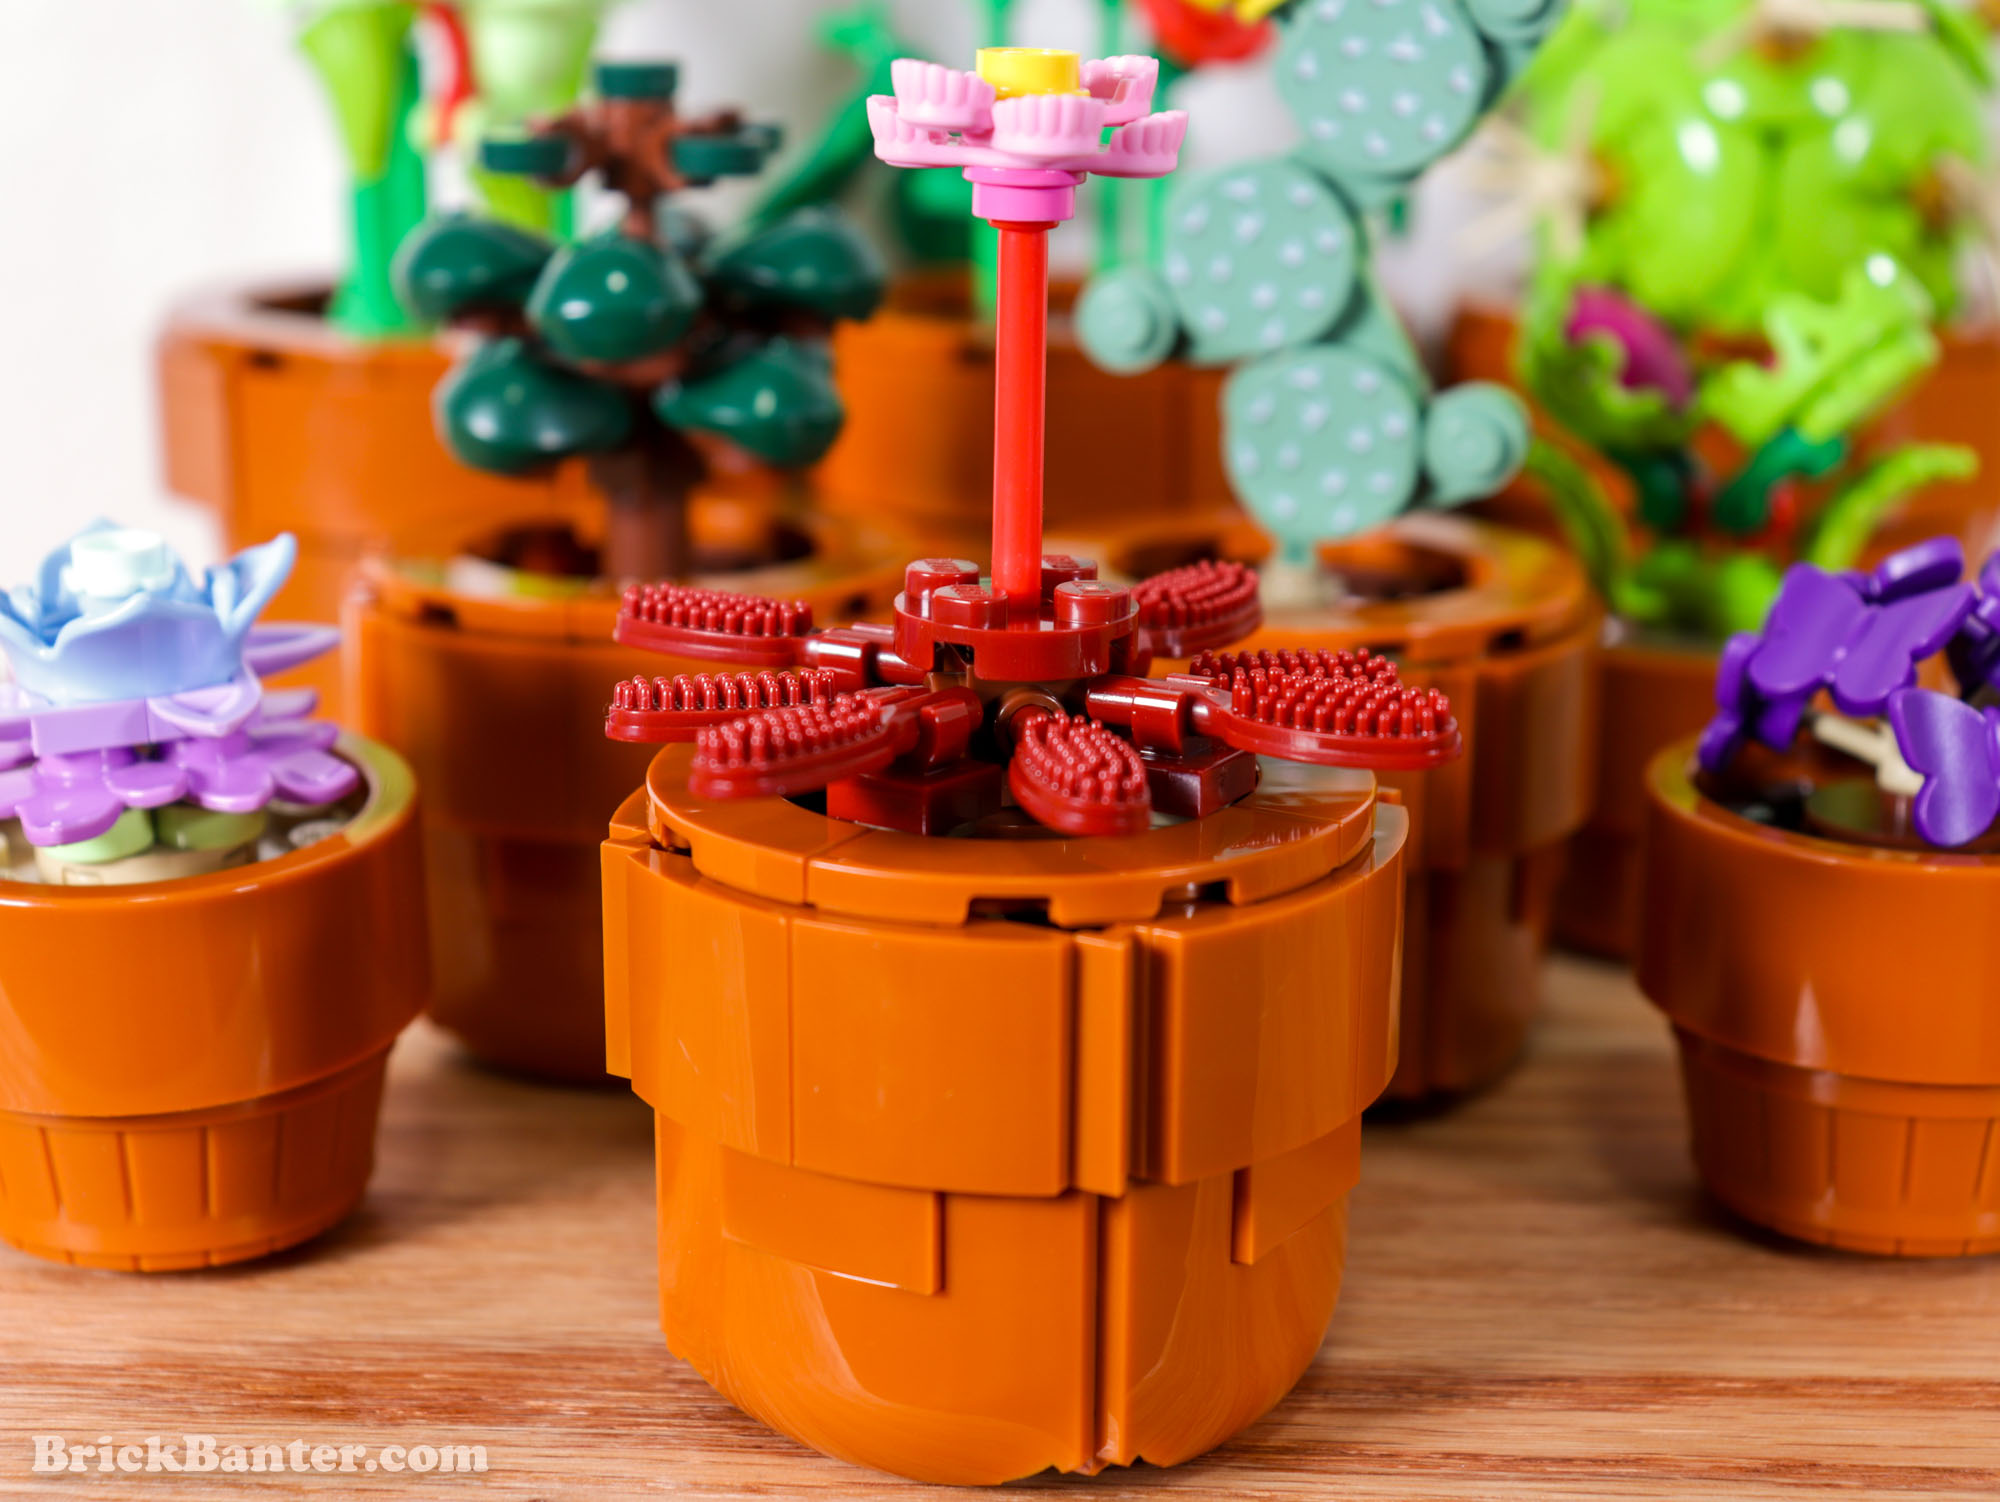 LEGO's next Botanical set is 10329 Tiny Plants, arriving December 2023 -  Jay's Brick Blog